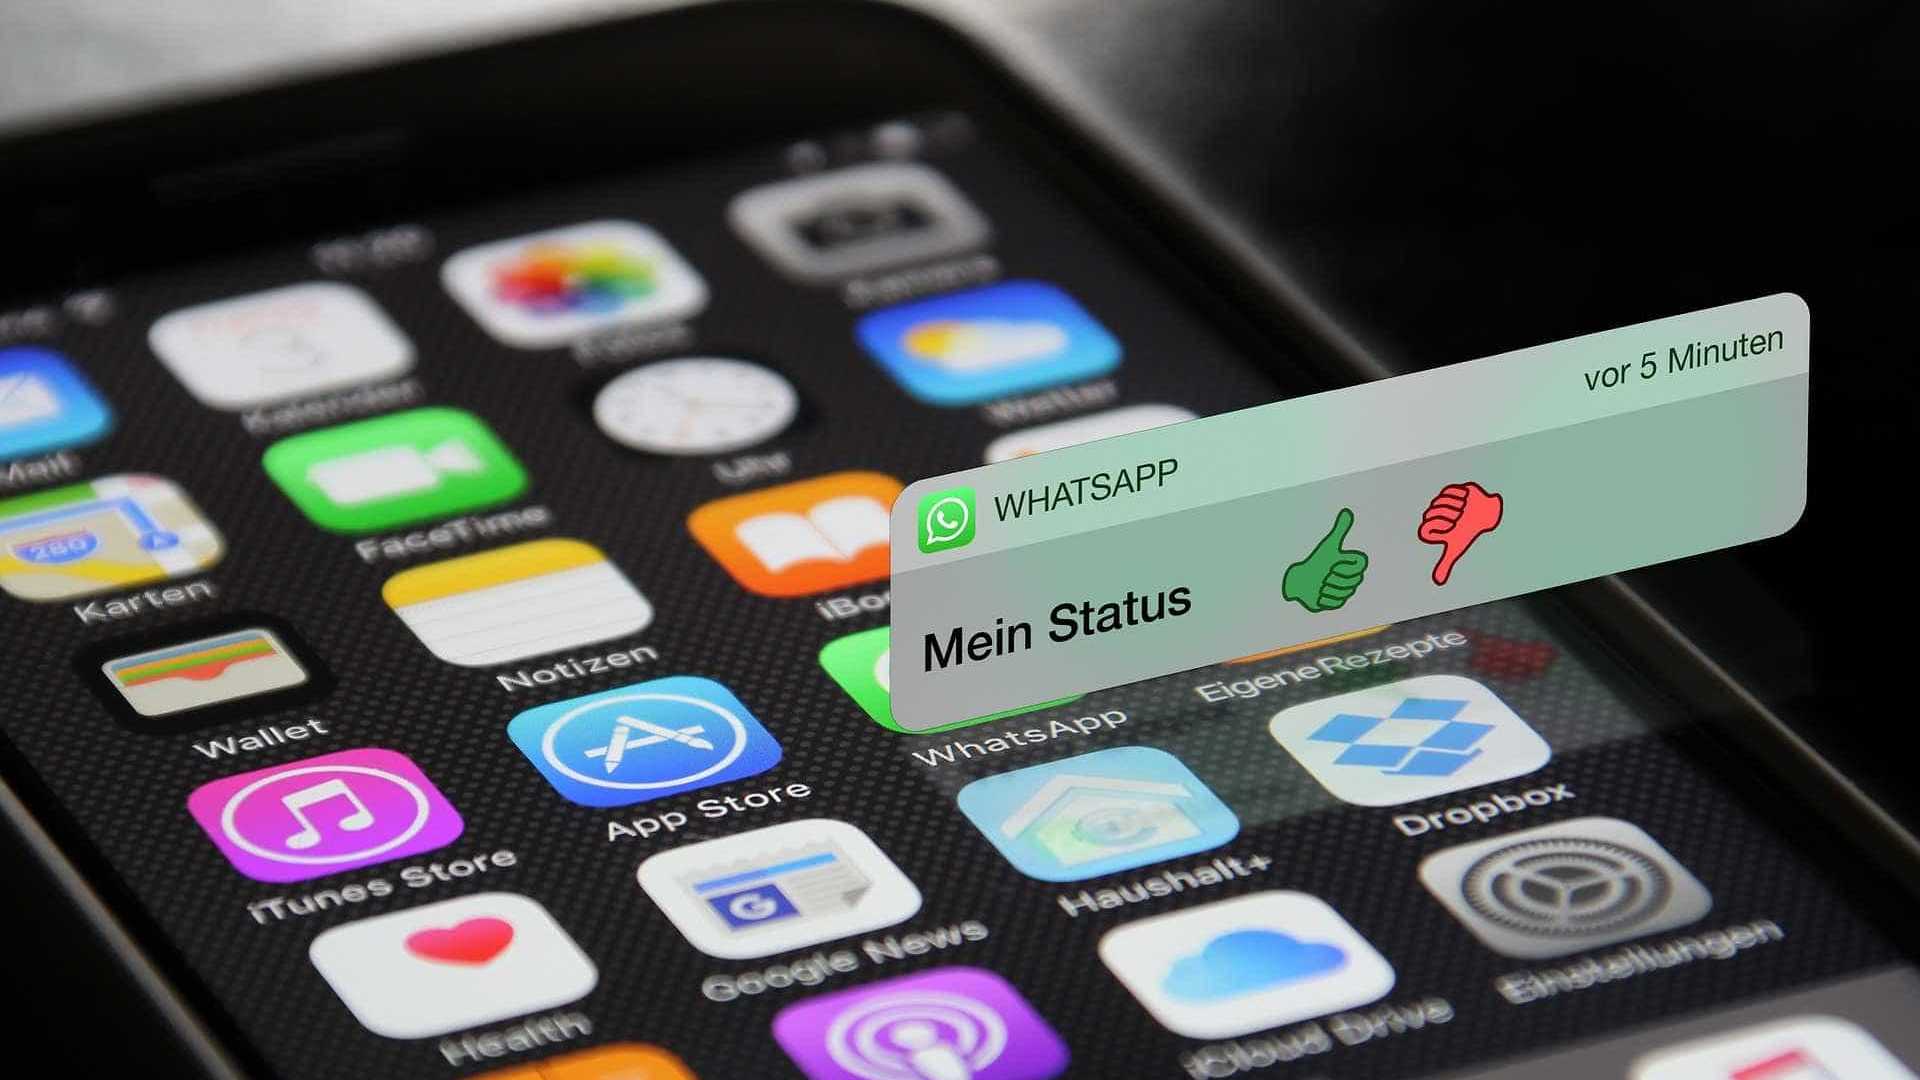 Apple admite falha no iOS que trava WhatsApp; entenda